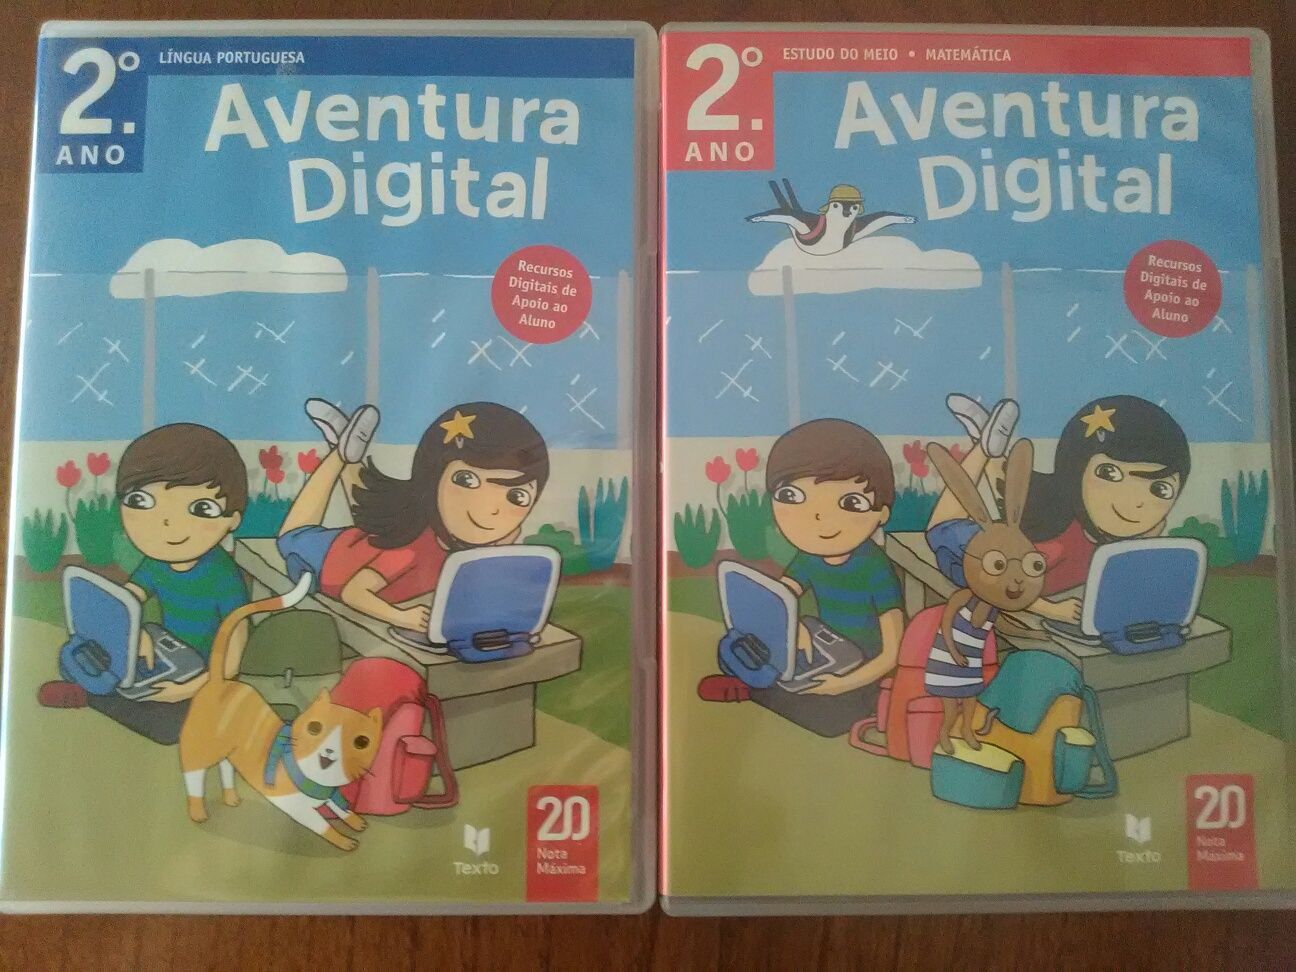 CD-ROM "Aventura Digital" 2° ano (ACEITO TROCAS)